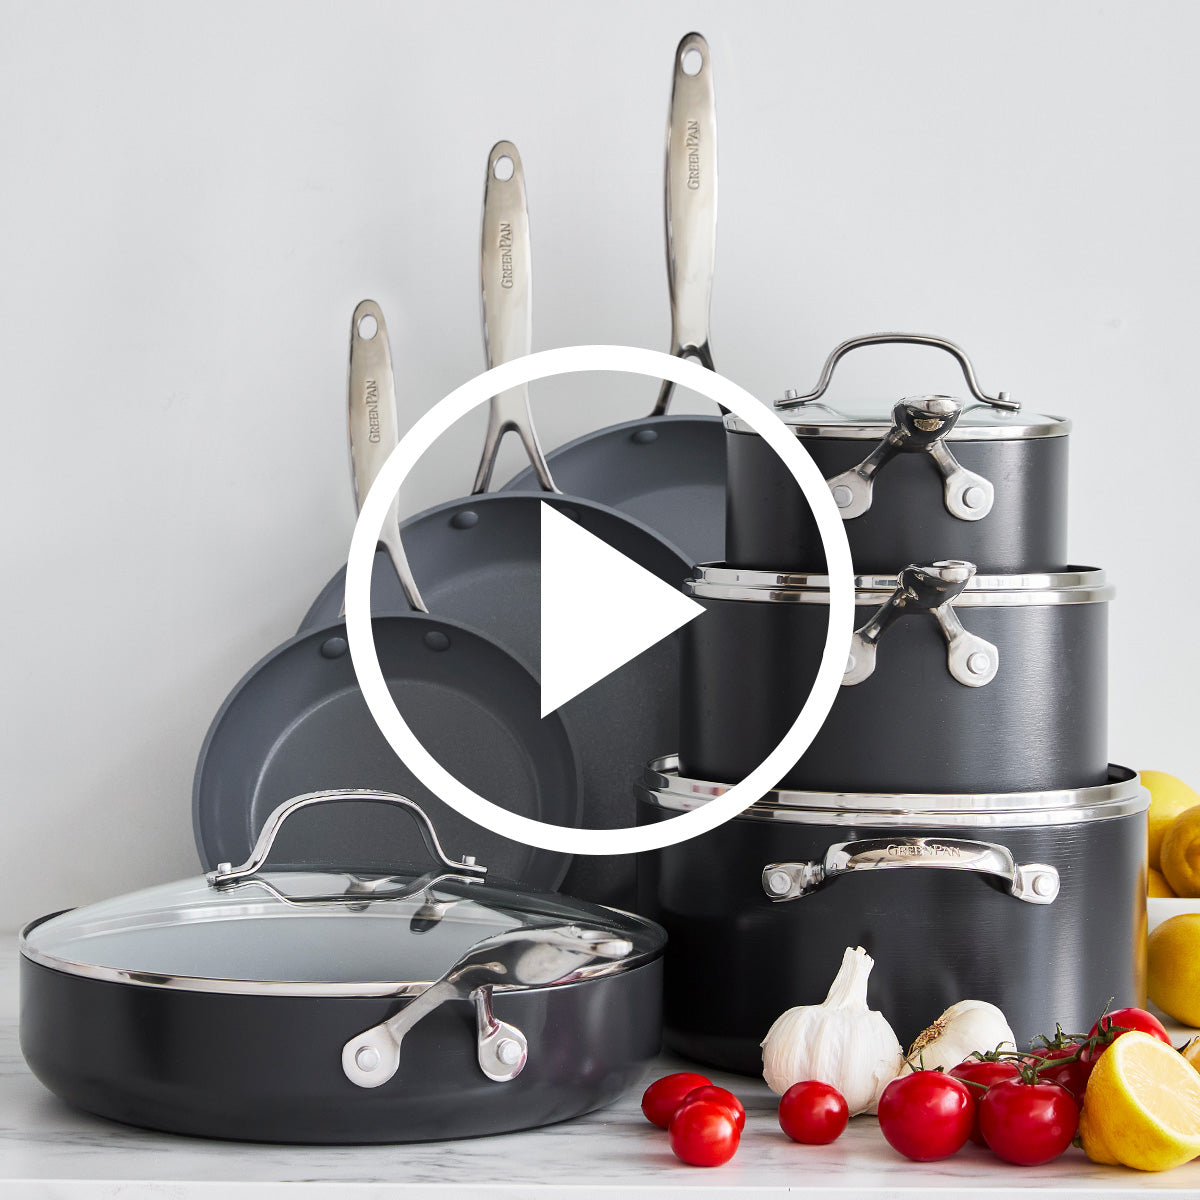 Greenpan - Venice Pro Ceramic Non-Stick Frypan, 12 Inch – Kitchen Store &  More